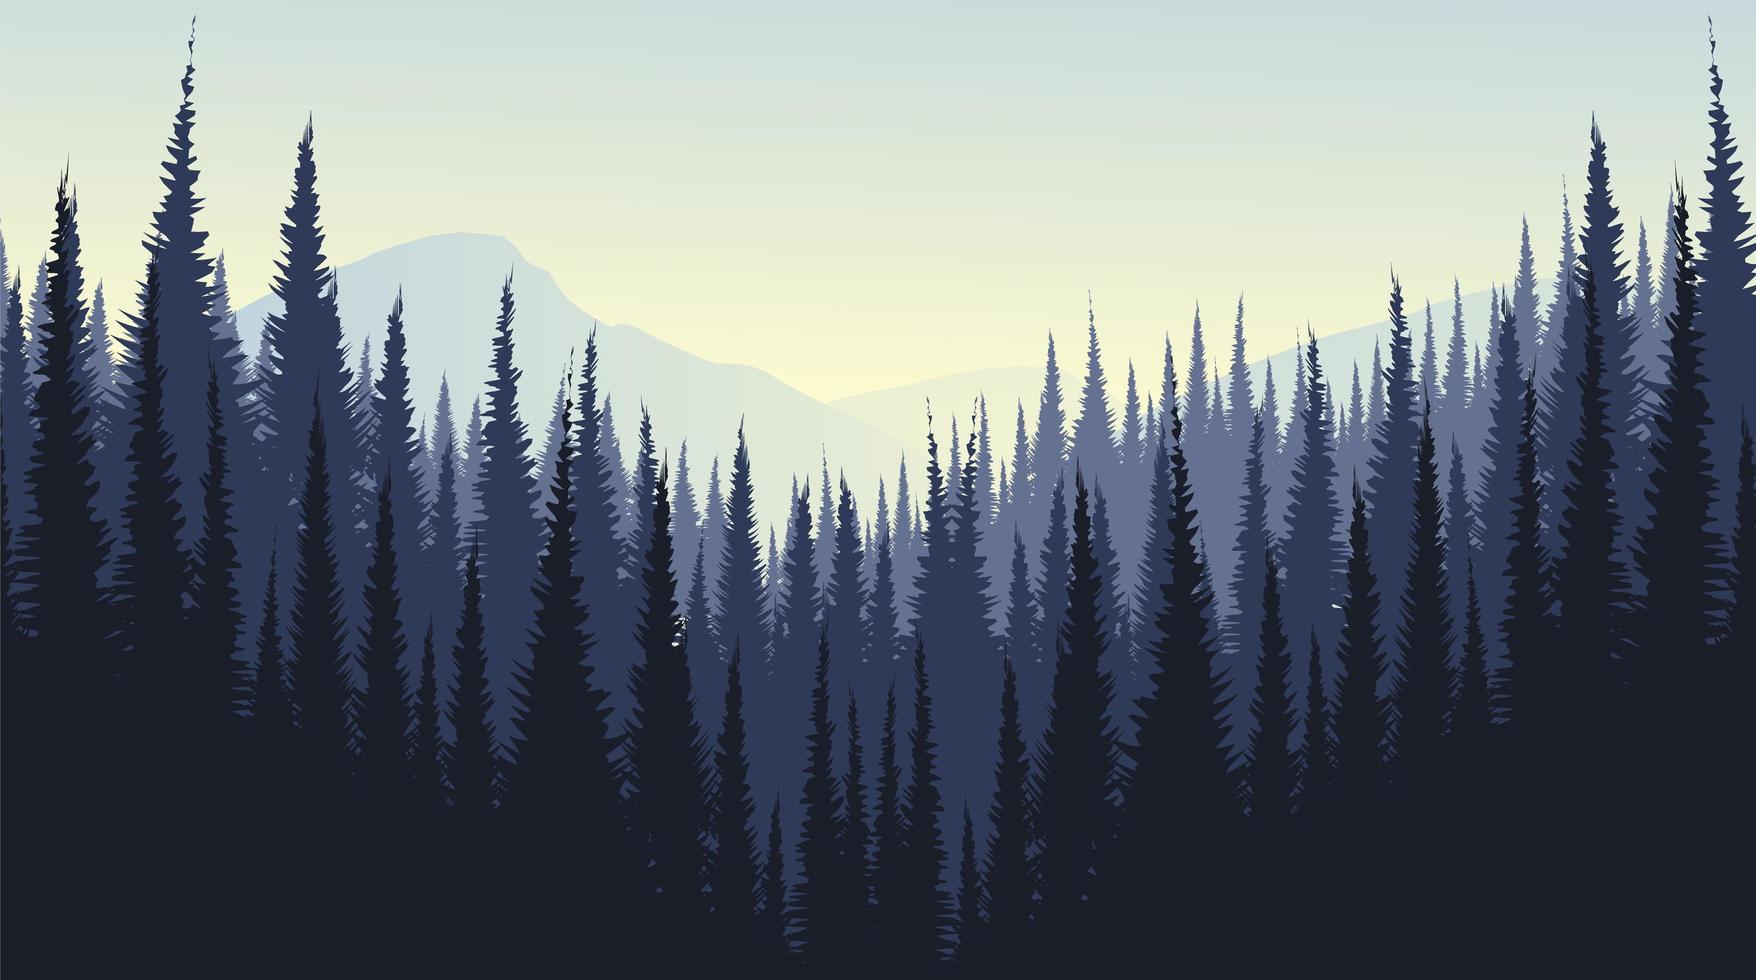 paysage de montagne de vecteur avec la conception de concept de forêt de pins, de brouillard et de brouillard.